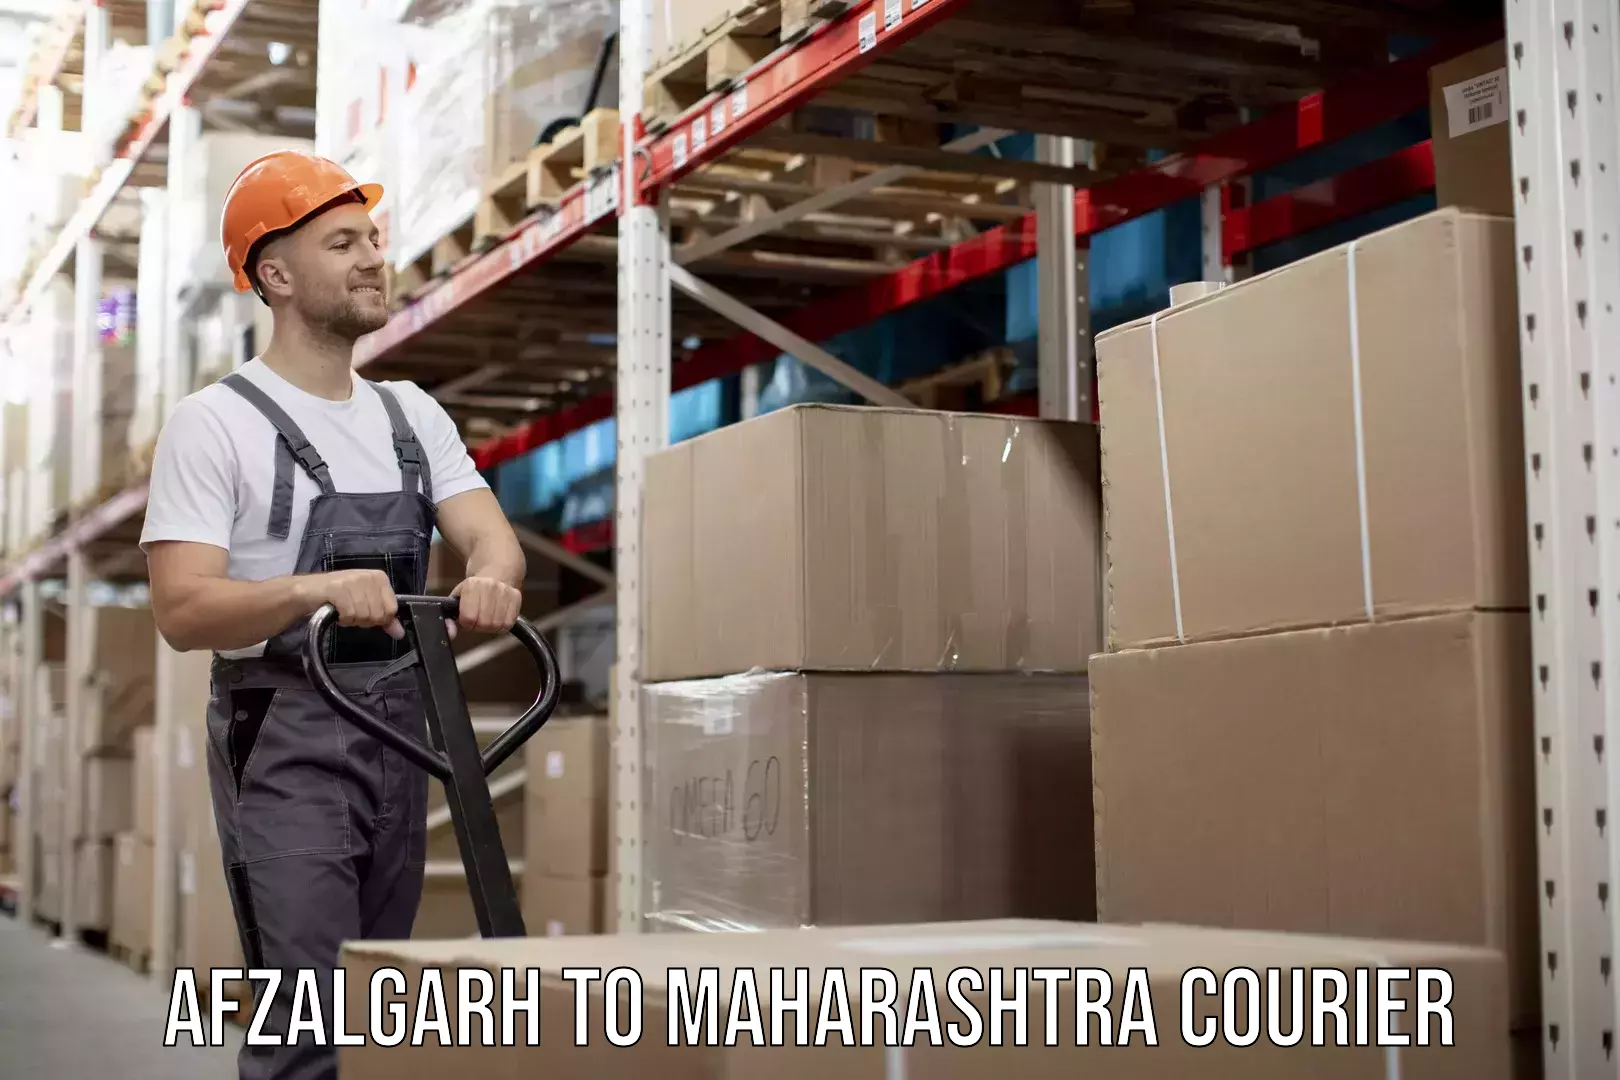 Express logistics service Afzalgarh to Maharashtra